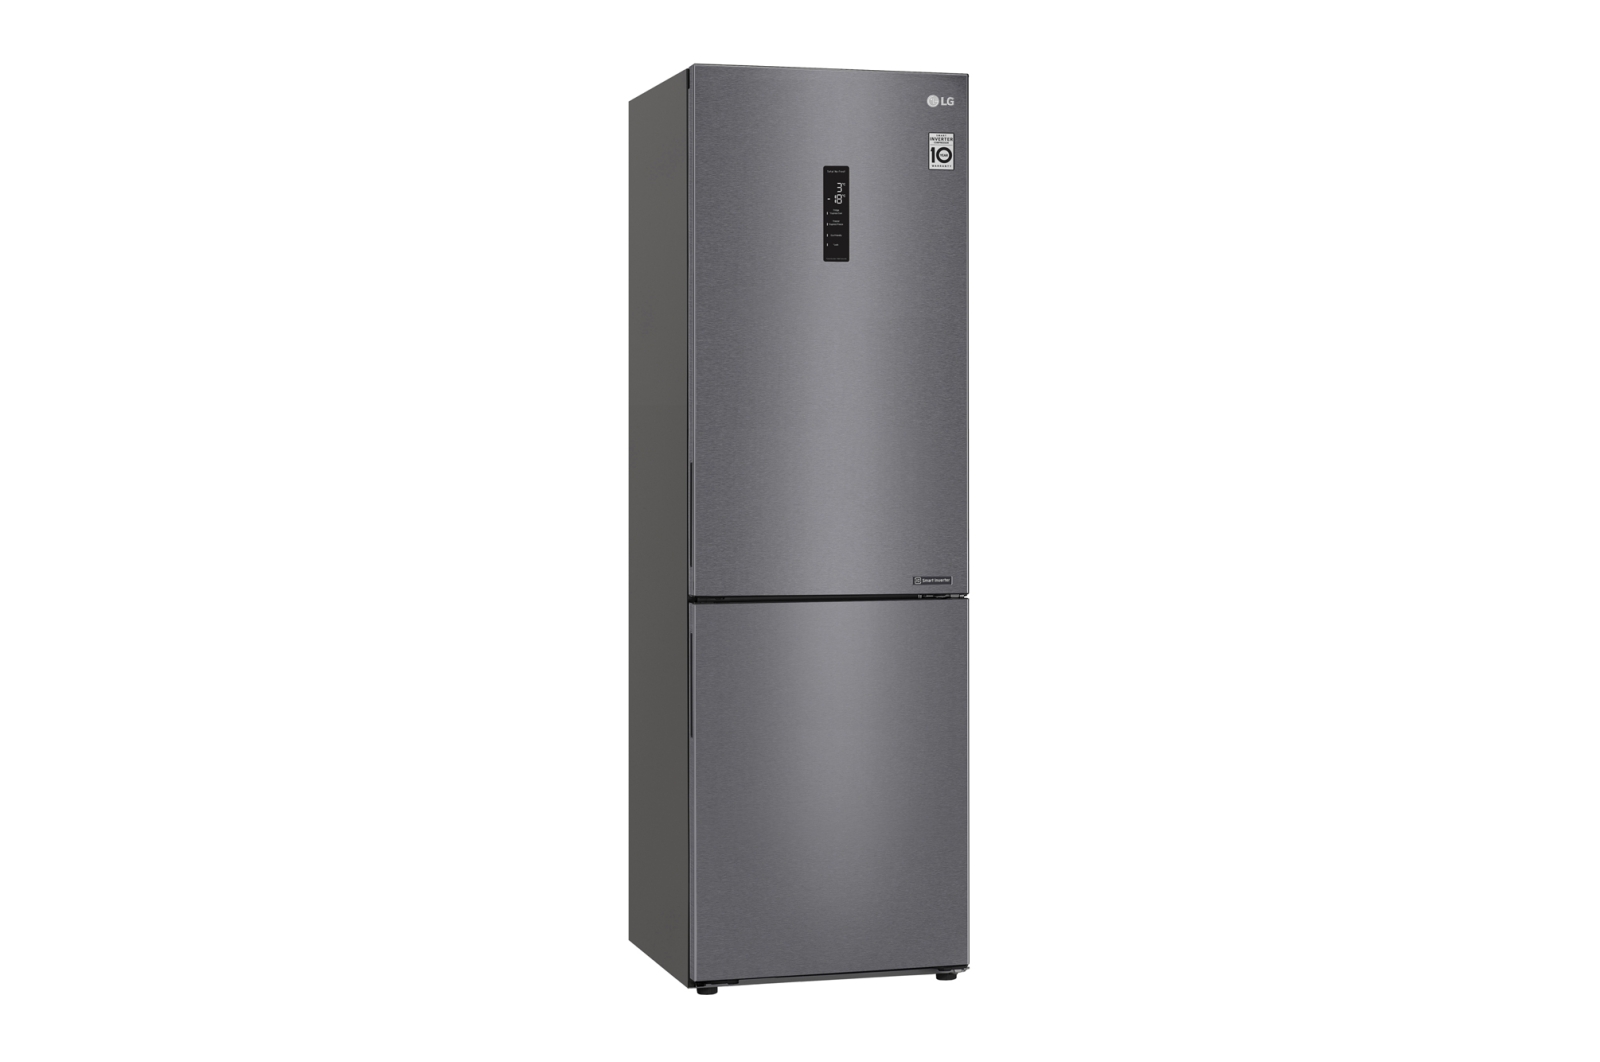 Двухкамерный холодильник LG GA-B459CLSL																		 — описание, фото, цены в интернет-магазине Премьер Техно